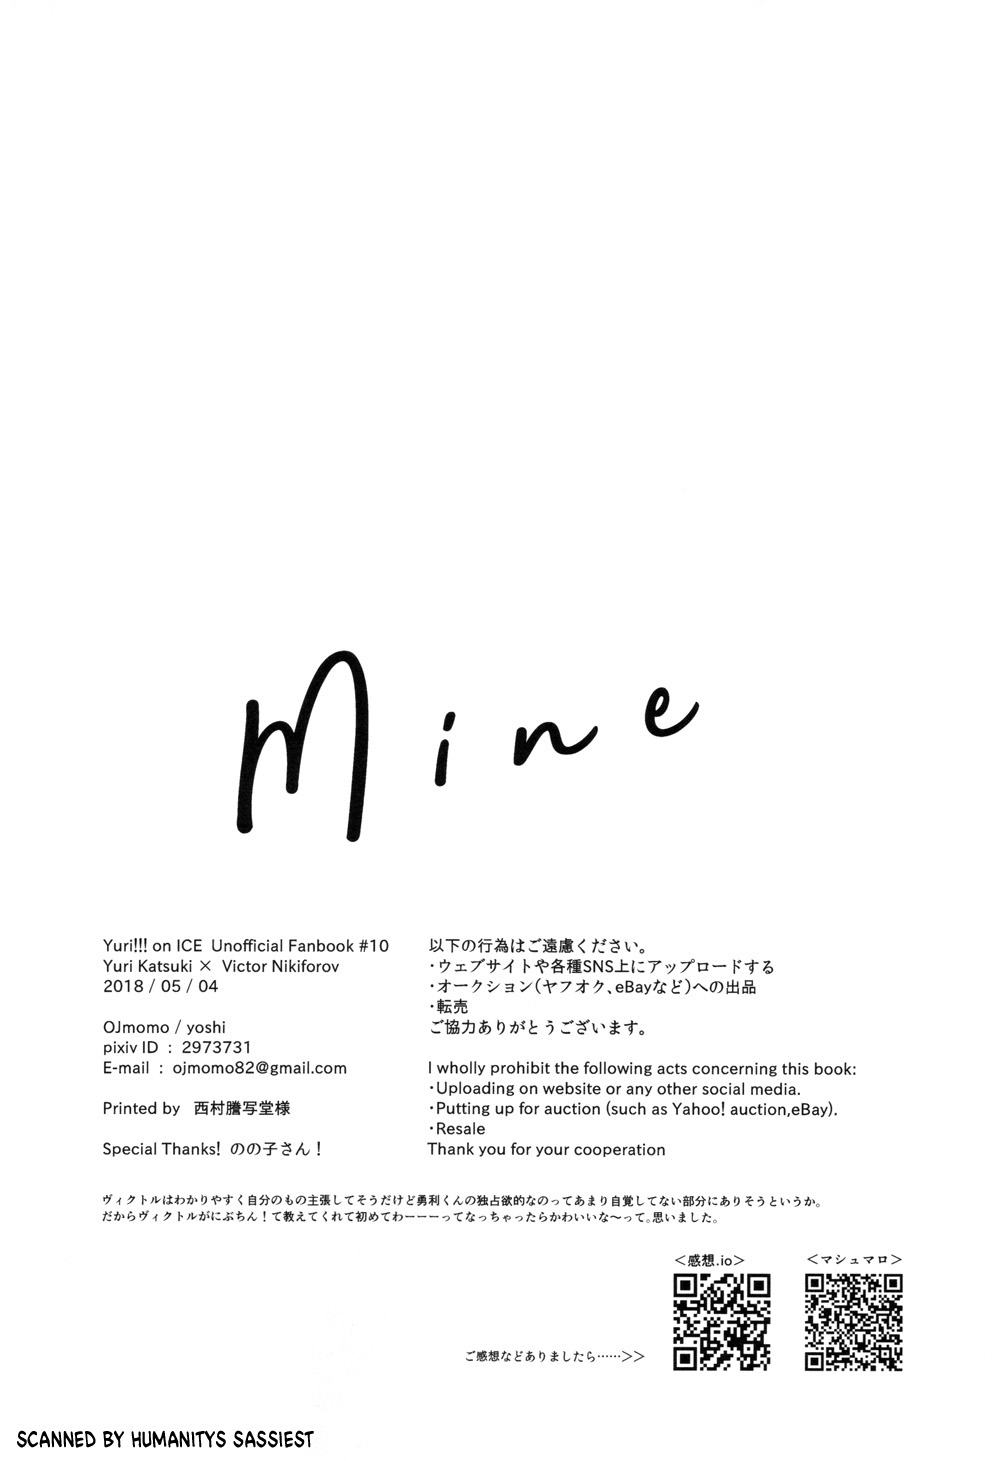 (氷奏ストラースチGP2018) [OJmomo (yoshi)] Mine (ユーリ!!! on ICE)